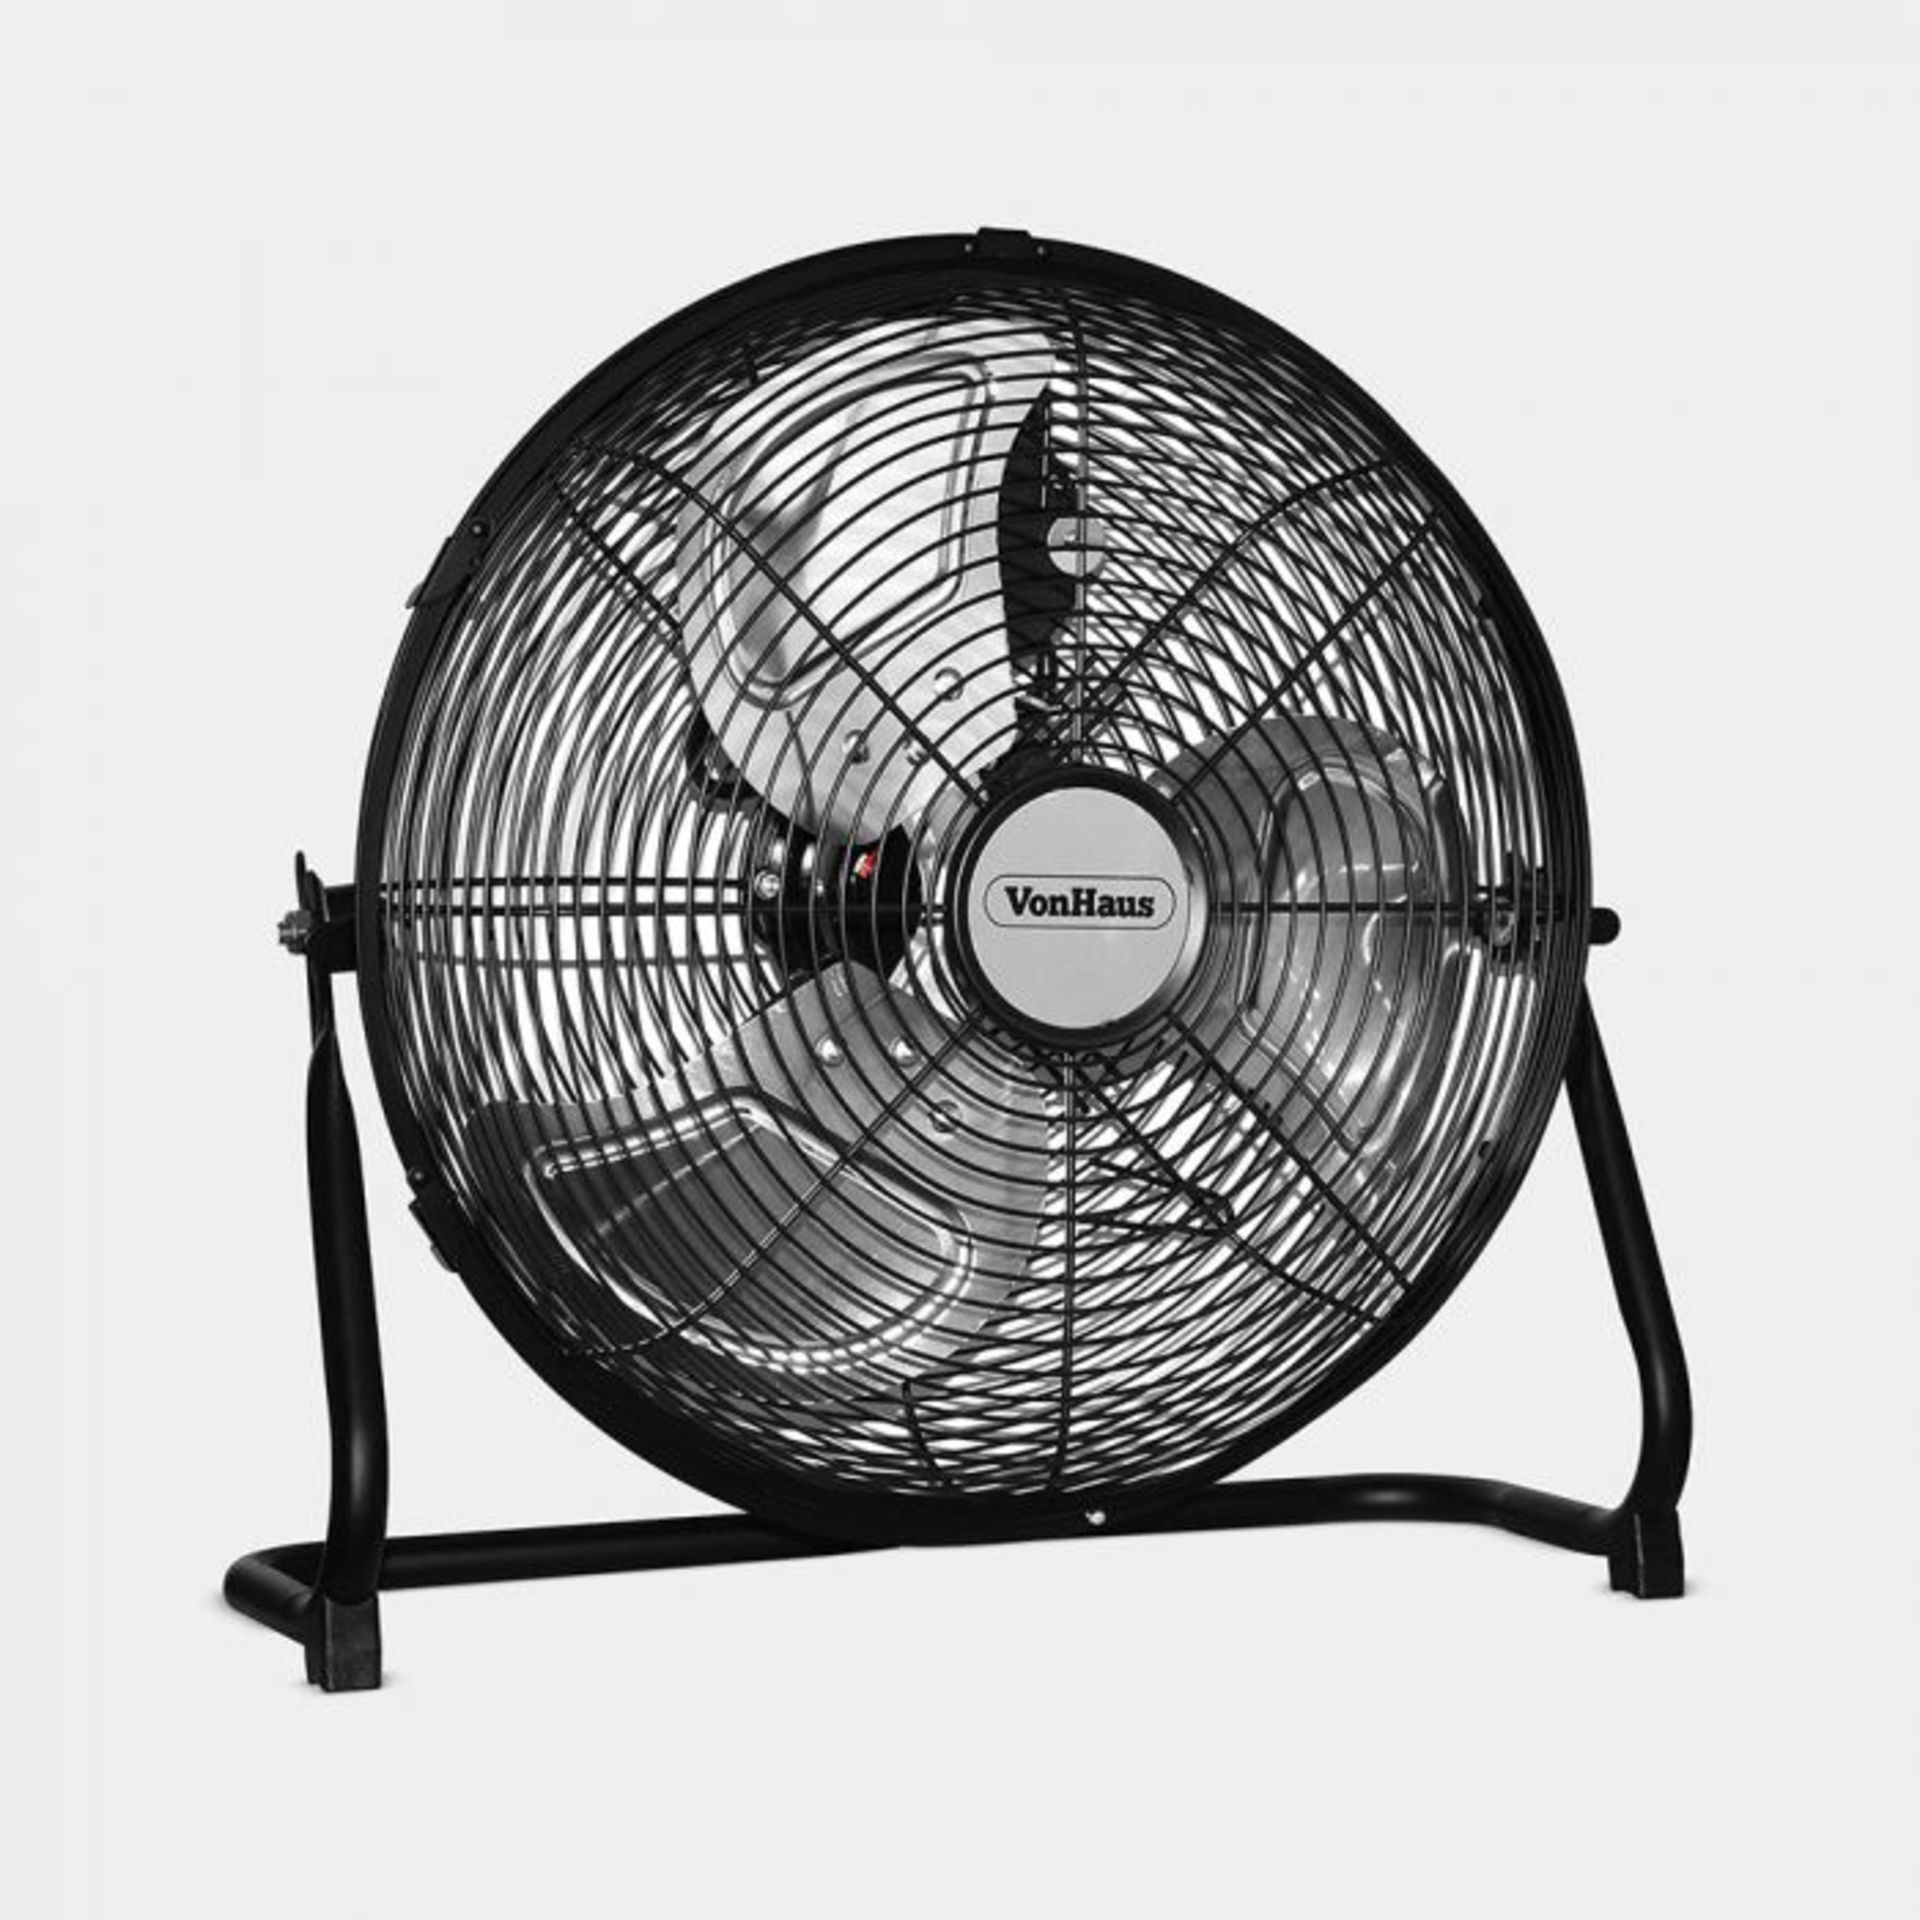 18” Matte Black Metal Floor Fan. Make cooling off a breeze with this matte black metal floor fan